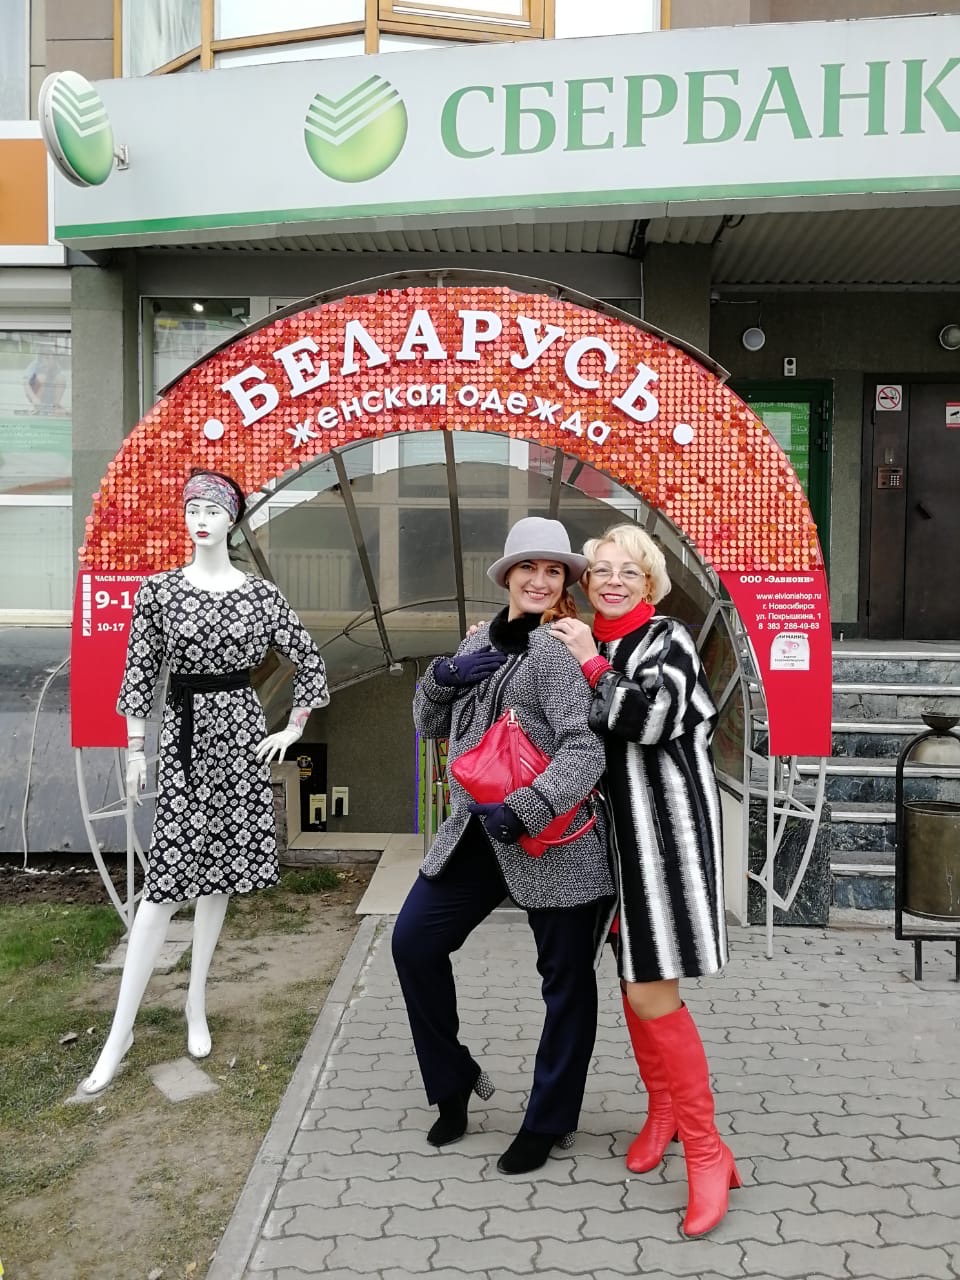 Интернет Магазин Белорусской Женской Одежды Больших